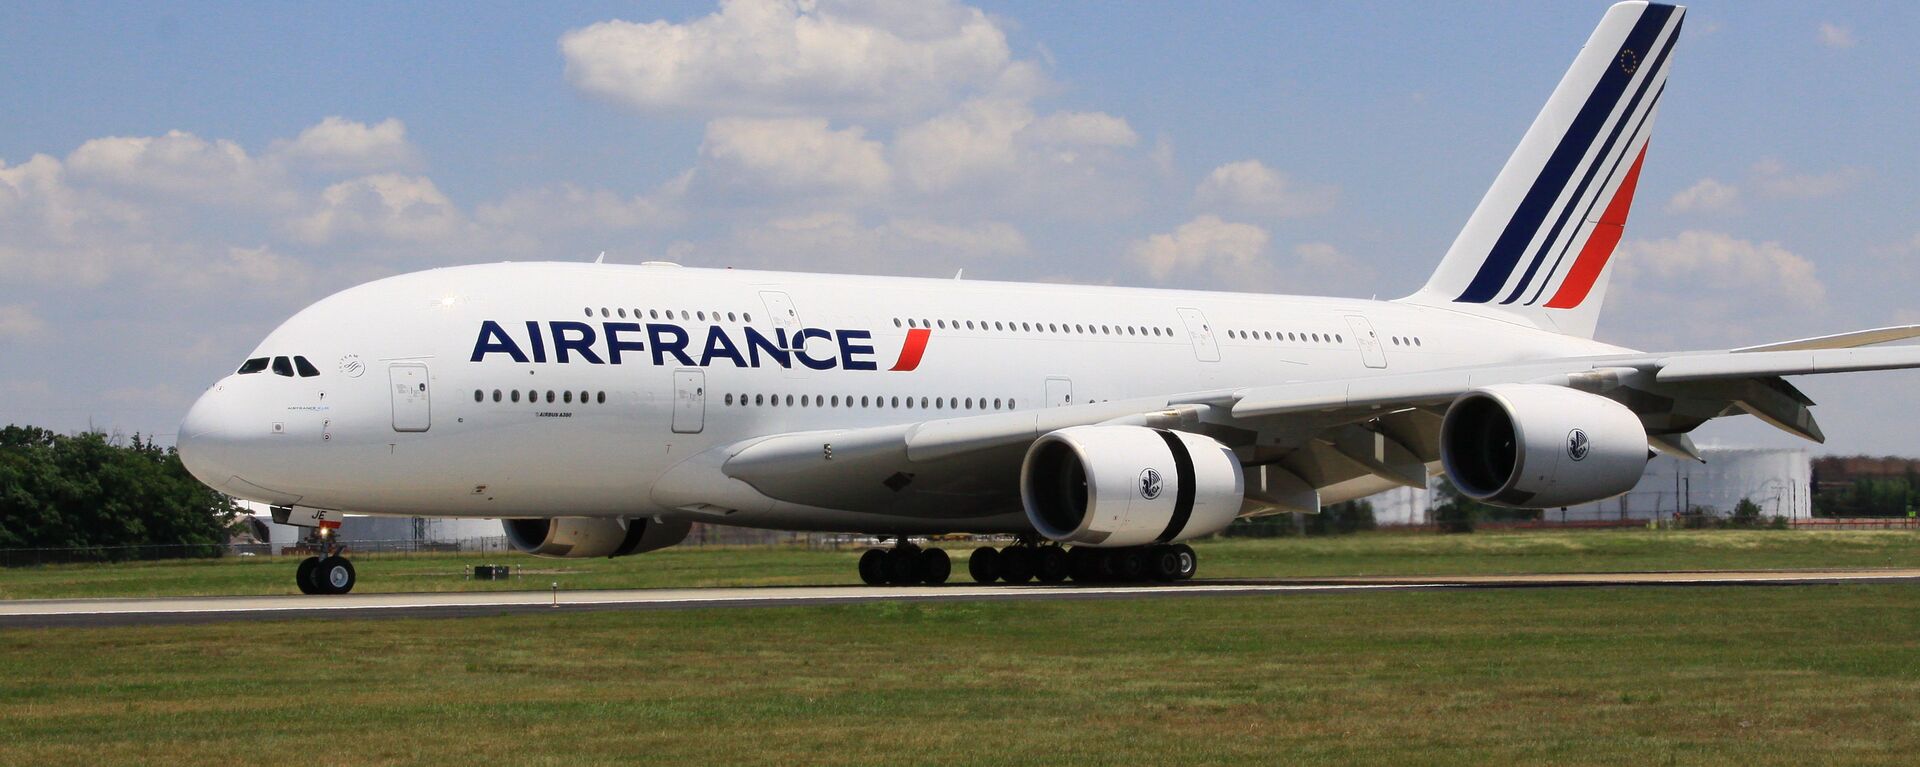 Самолет Airbus 380 (A380, авиакомпания Air France) впервые приземлился в аэропорту имени Даллеса в Вашингтоне, 6 июня 2011 года. - Sputnik Mundo, 1920, 01.10.2017